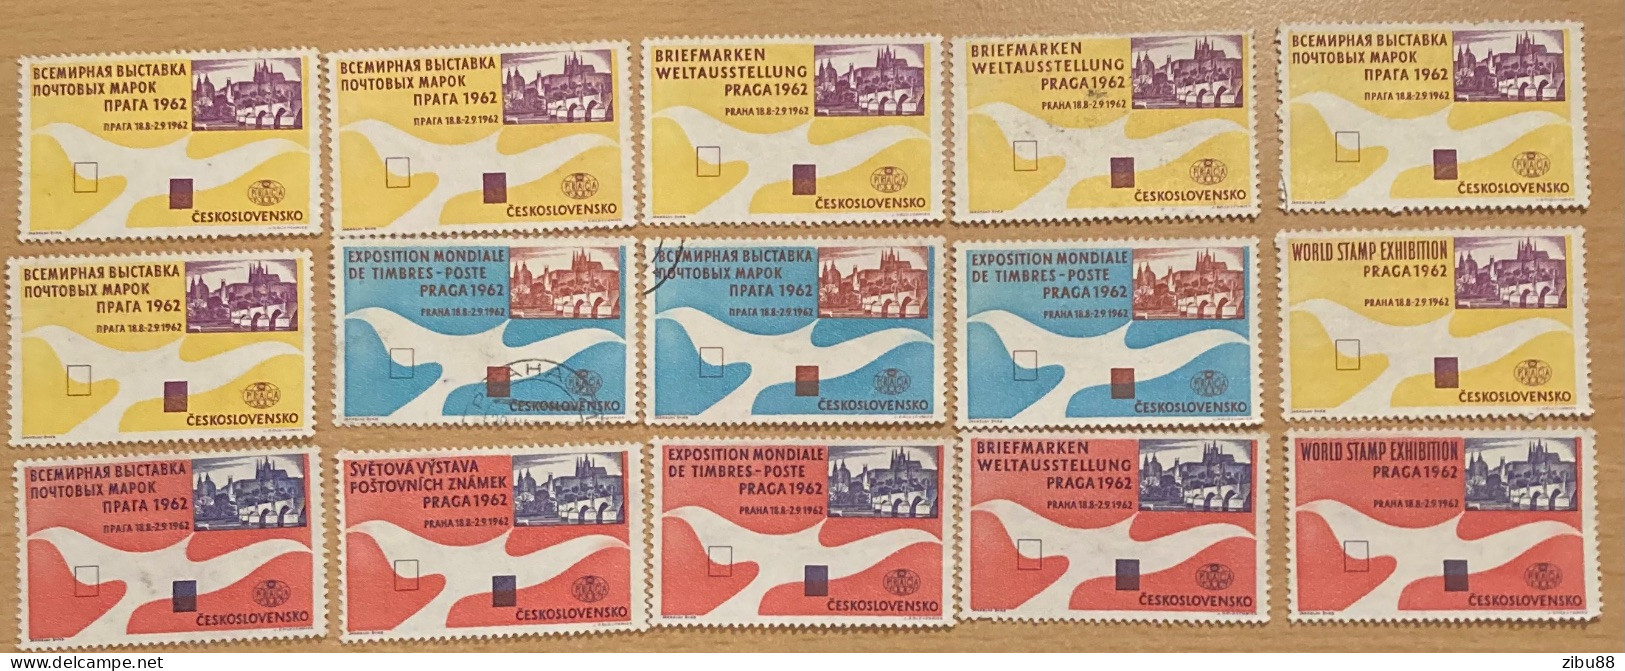 15 Stamps / Cinderella / Werbemarken Briefmarken Weltausstellung Prag 1962 World Stamp Exhibition - Collections, Lots & Series